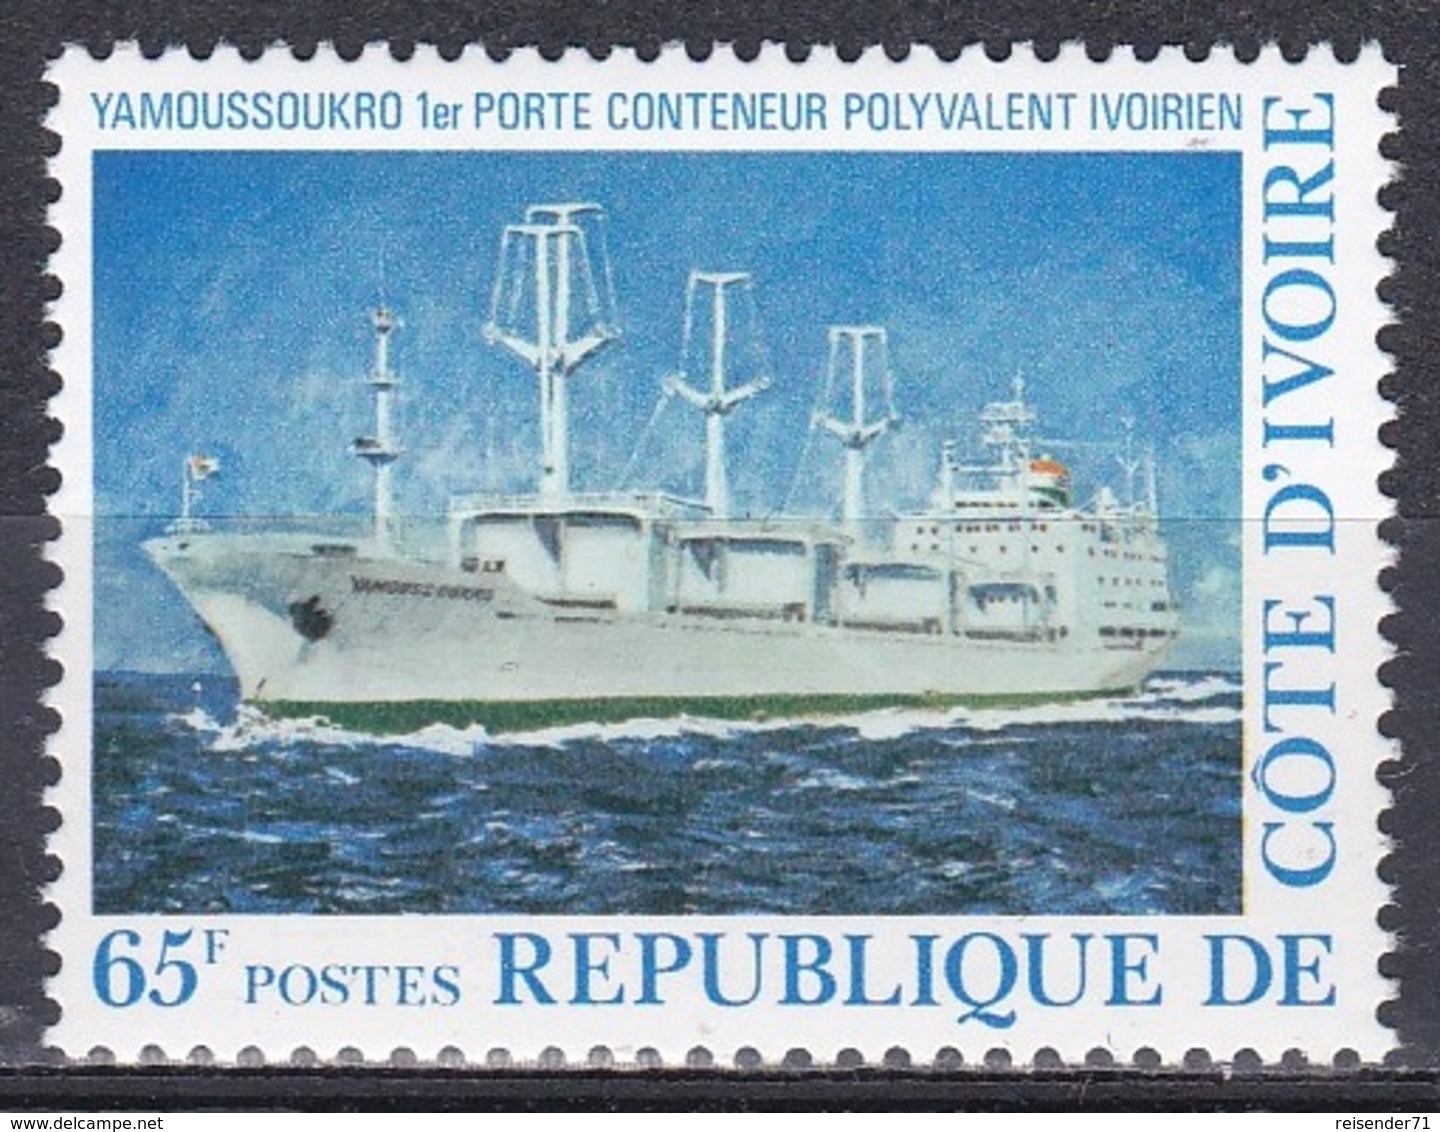 Elfenbeinküste Ivory Coast Cote D'Ivoire 1977 Transport Seefahrt Schiffe Ships Container Yamoussoukro, Mi. 531 ** - Côte D'Ivoire (1960-...)